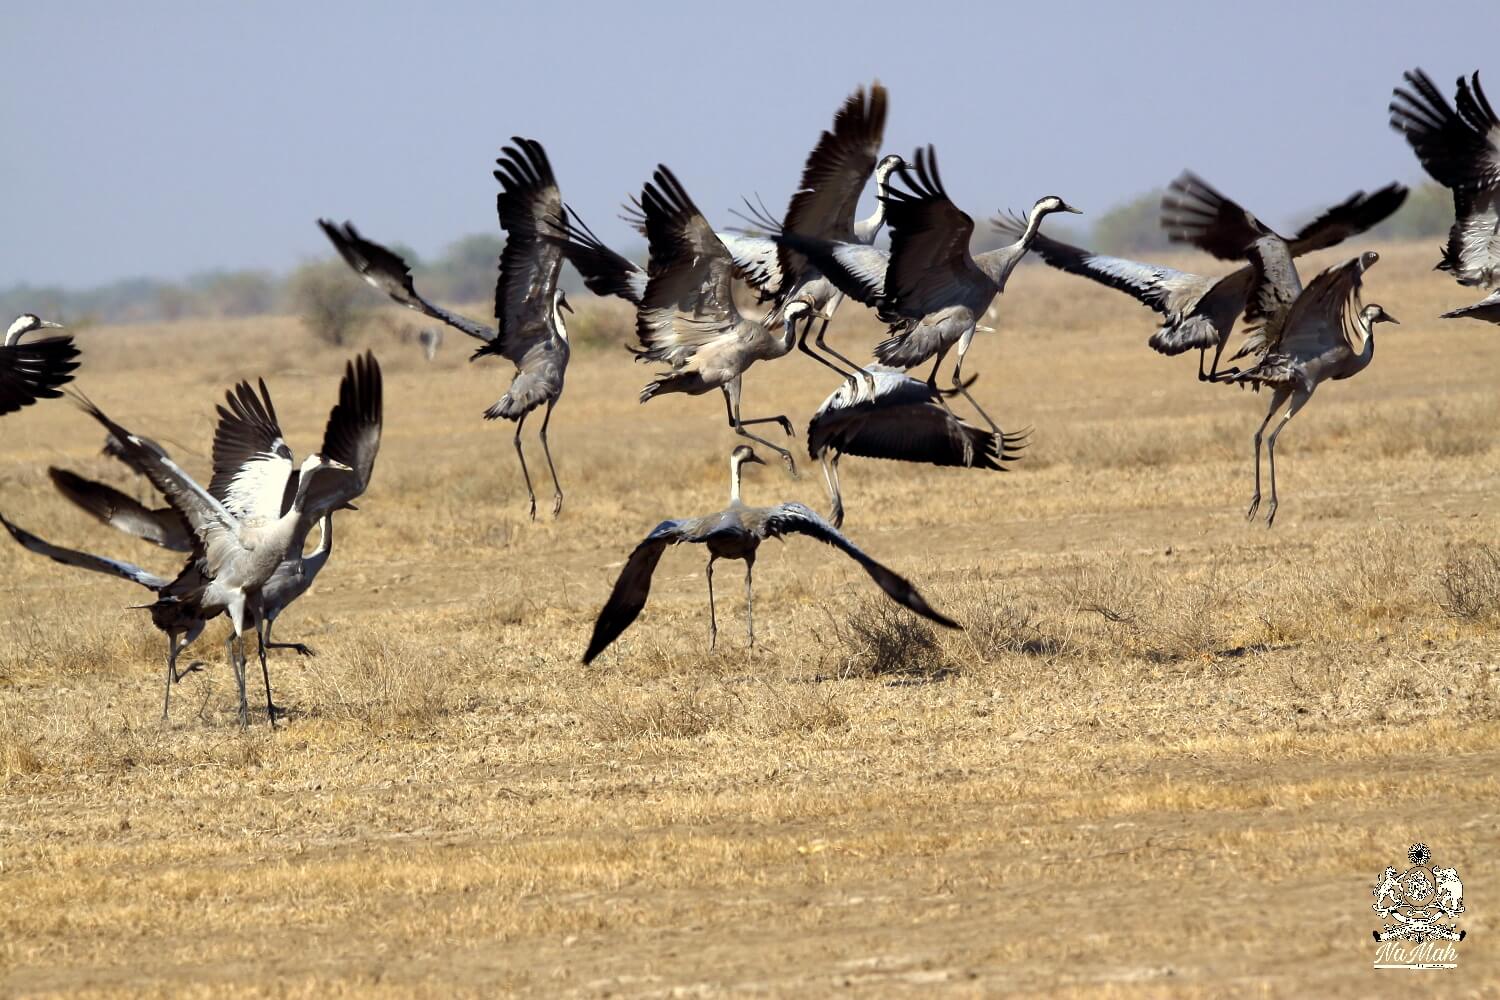 Crane Birds taking off together